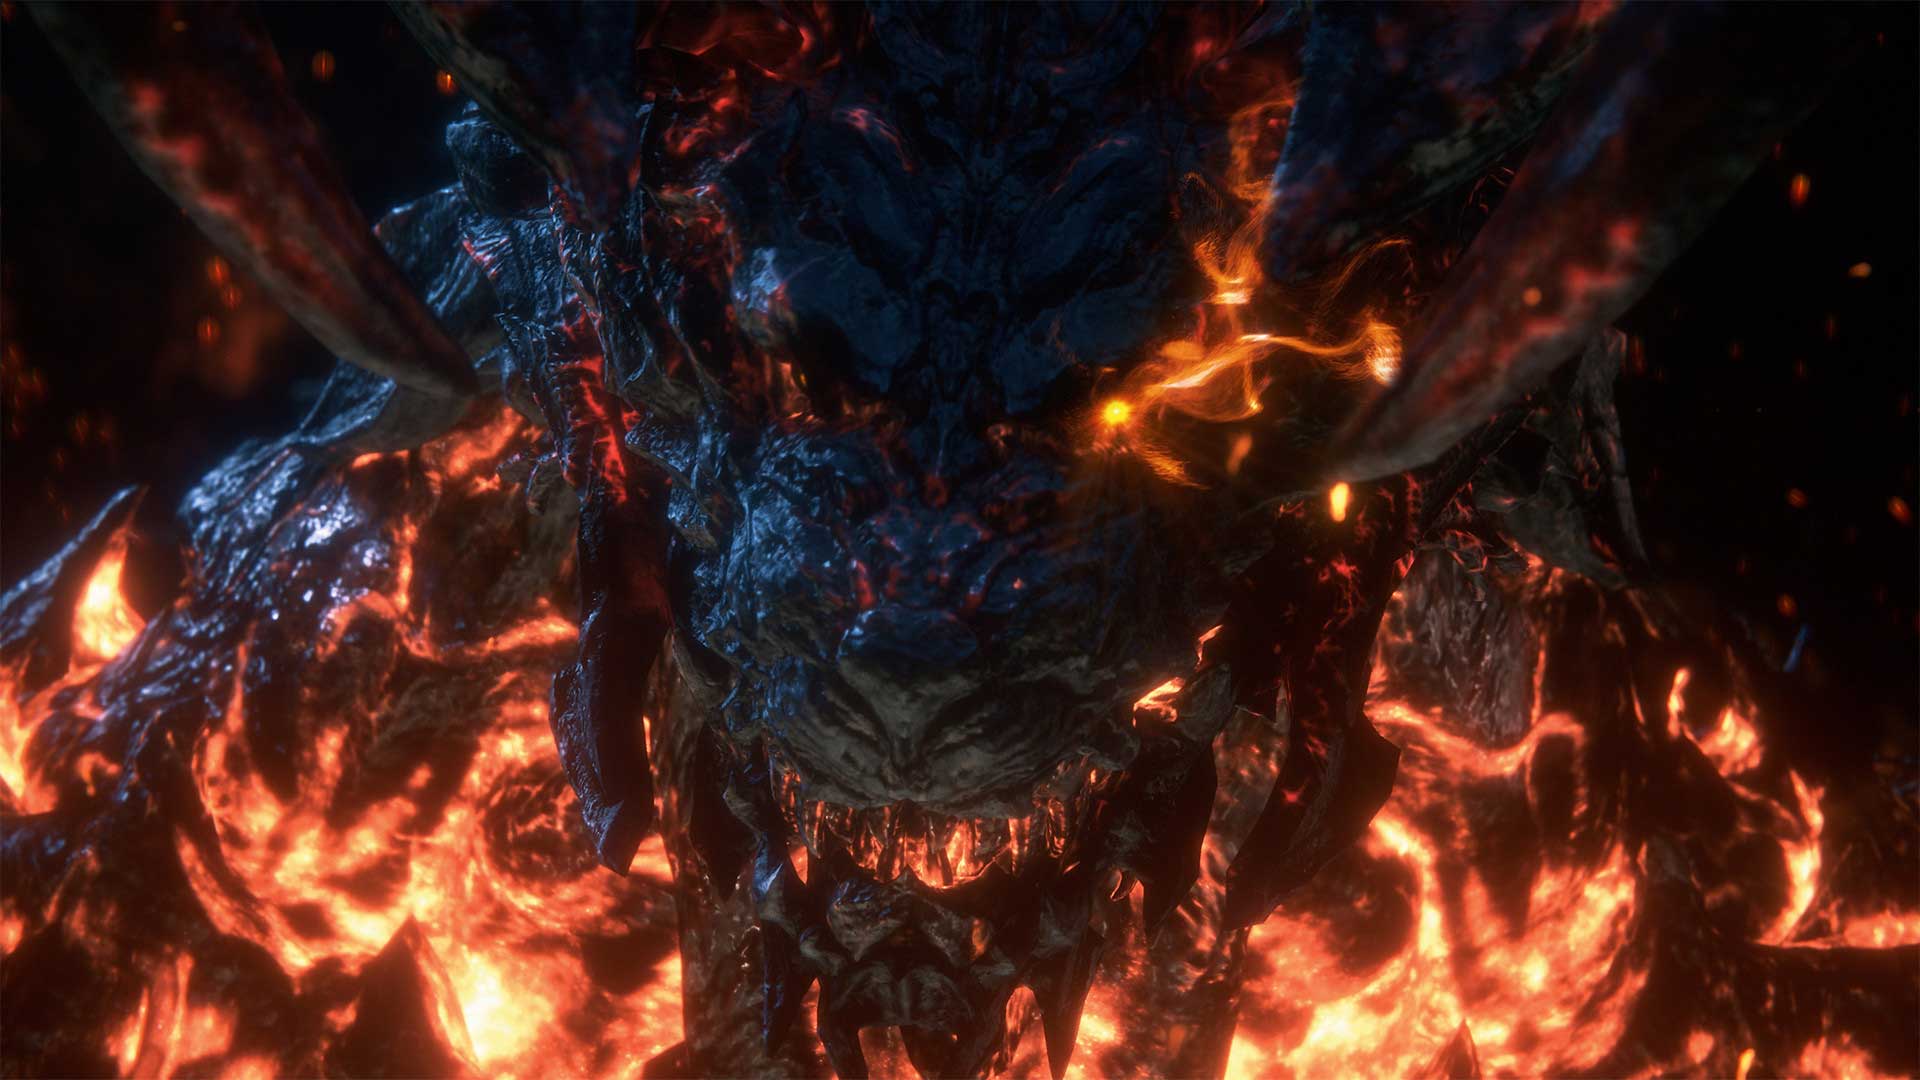 موجود آتشین در تصویر رسمی از بازی فاینال فانتزی ۱۶ شرکت ژاپنی اسکوئر انیکس